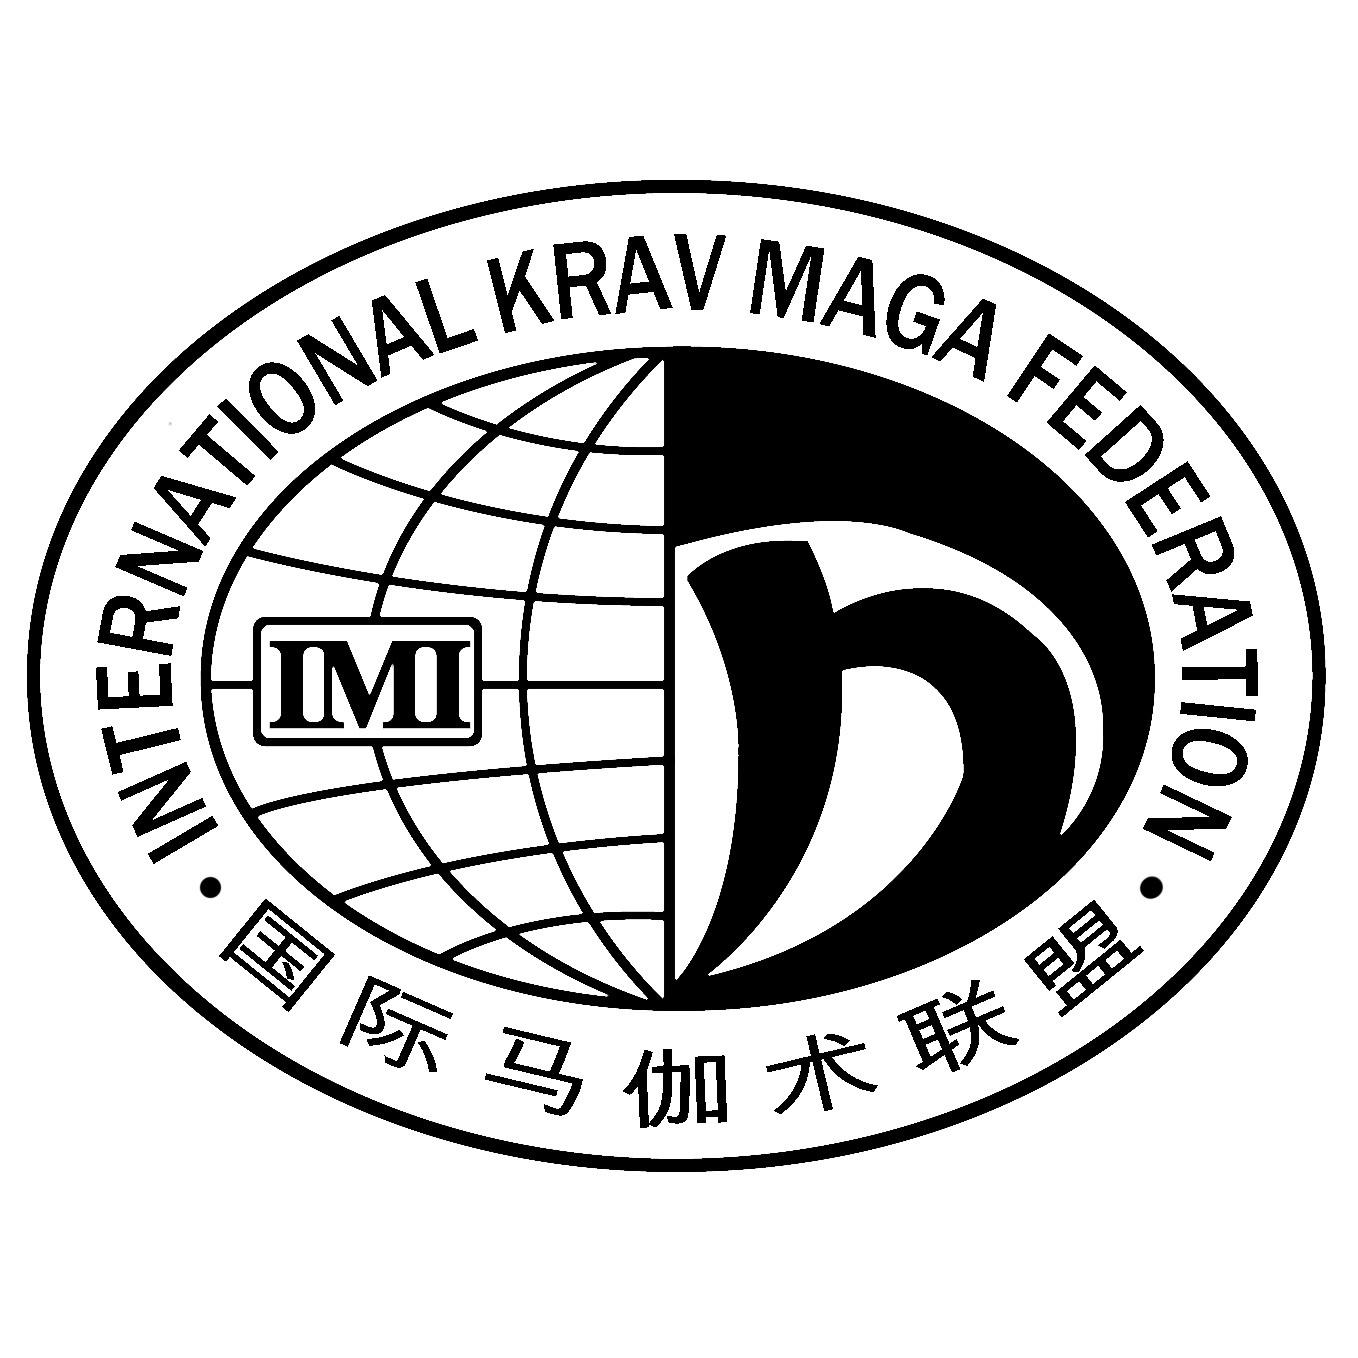 国际马伽术联盟